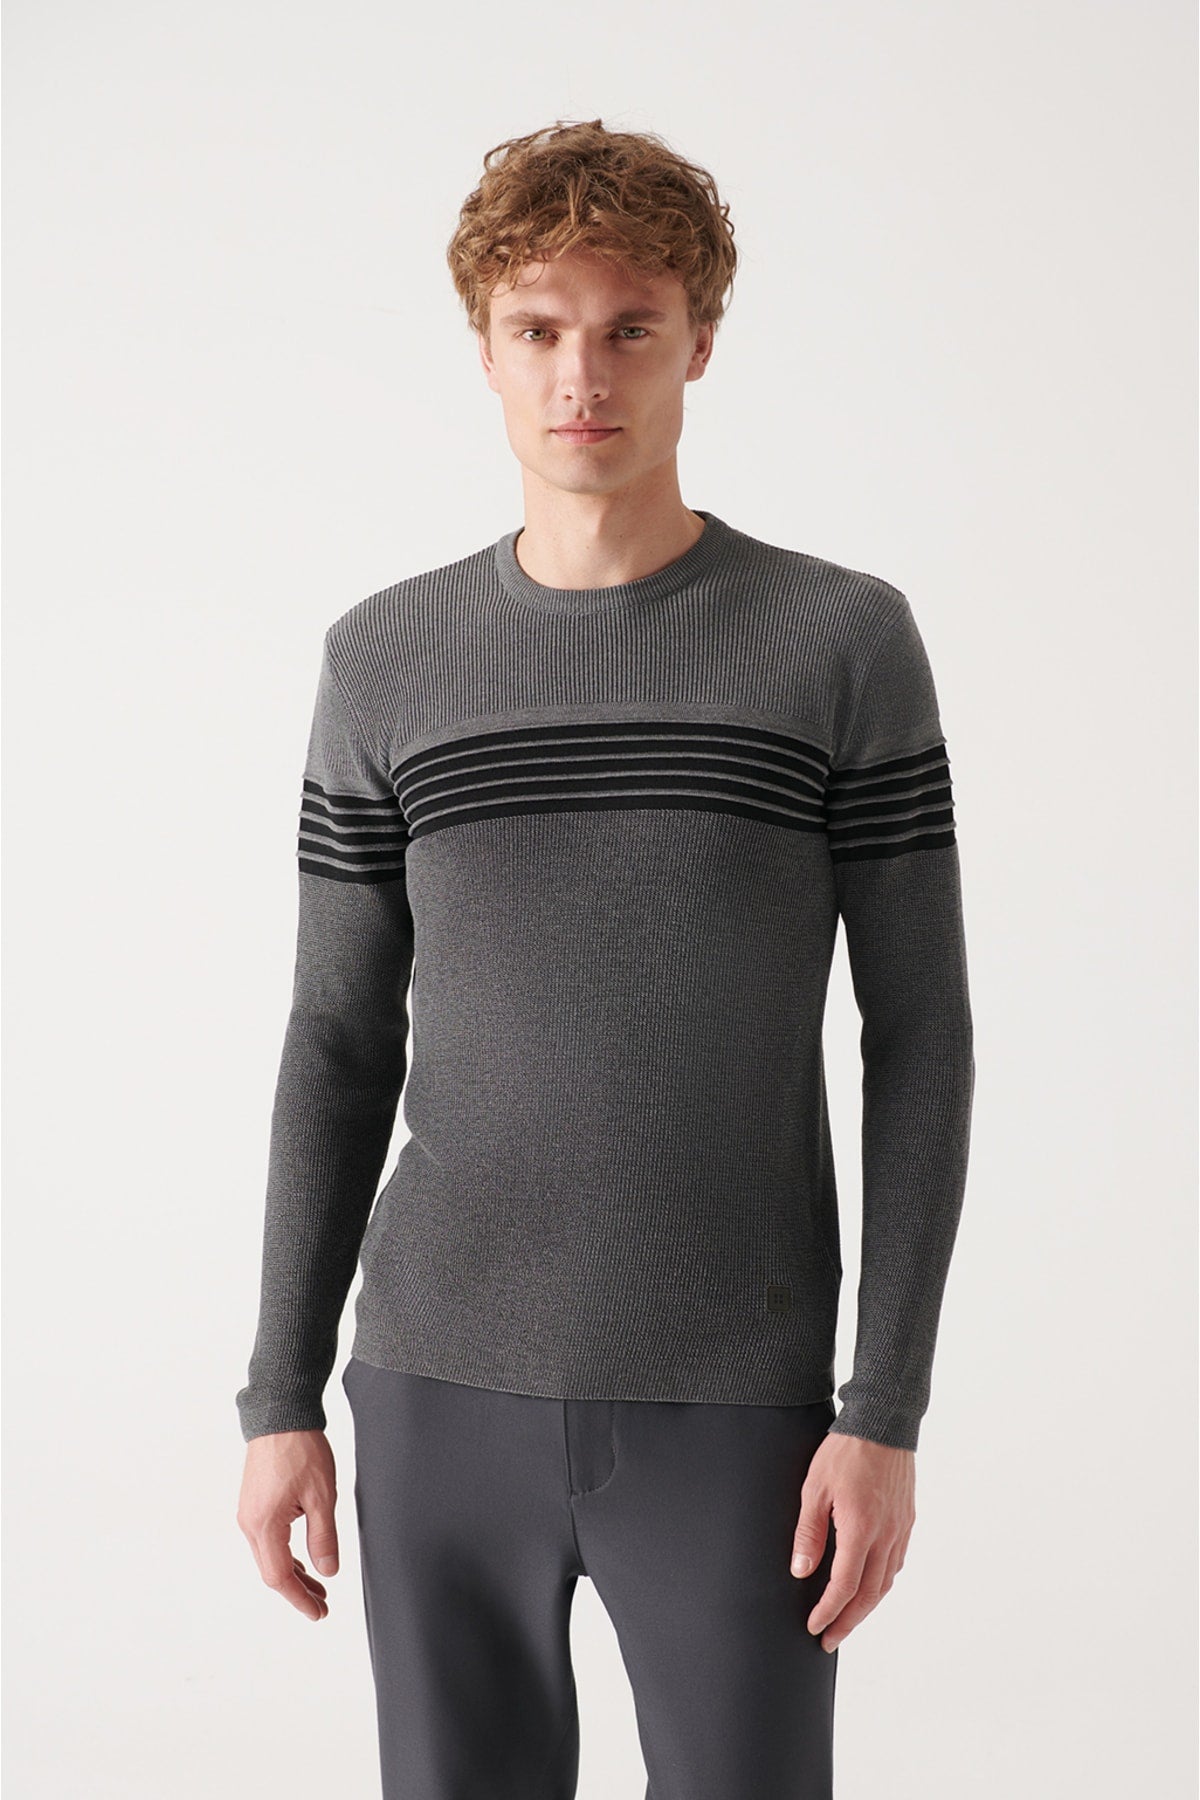 Men's gray bike collar panel detailed Thessaloniki Knitwear sweater A22y5076